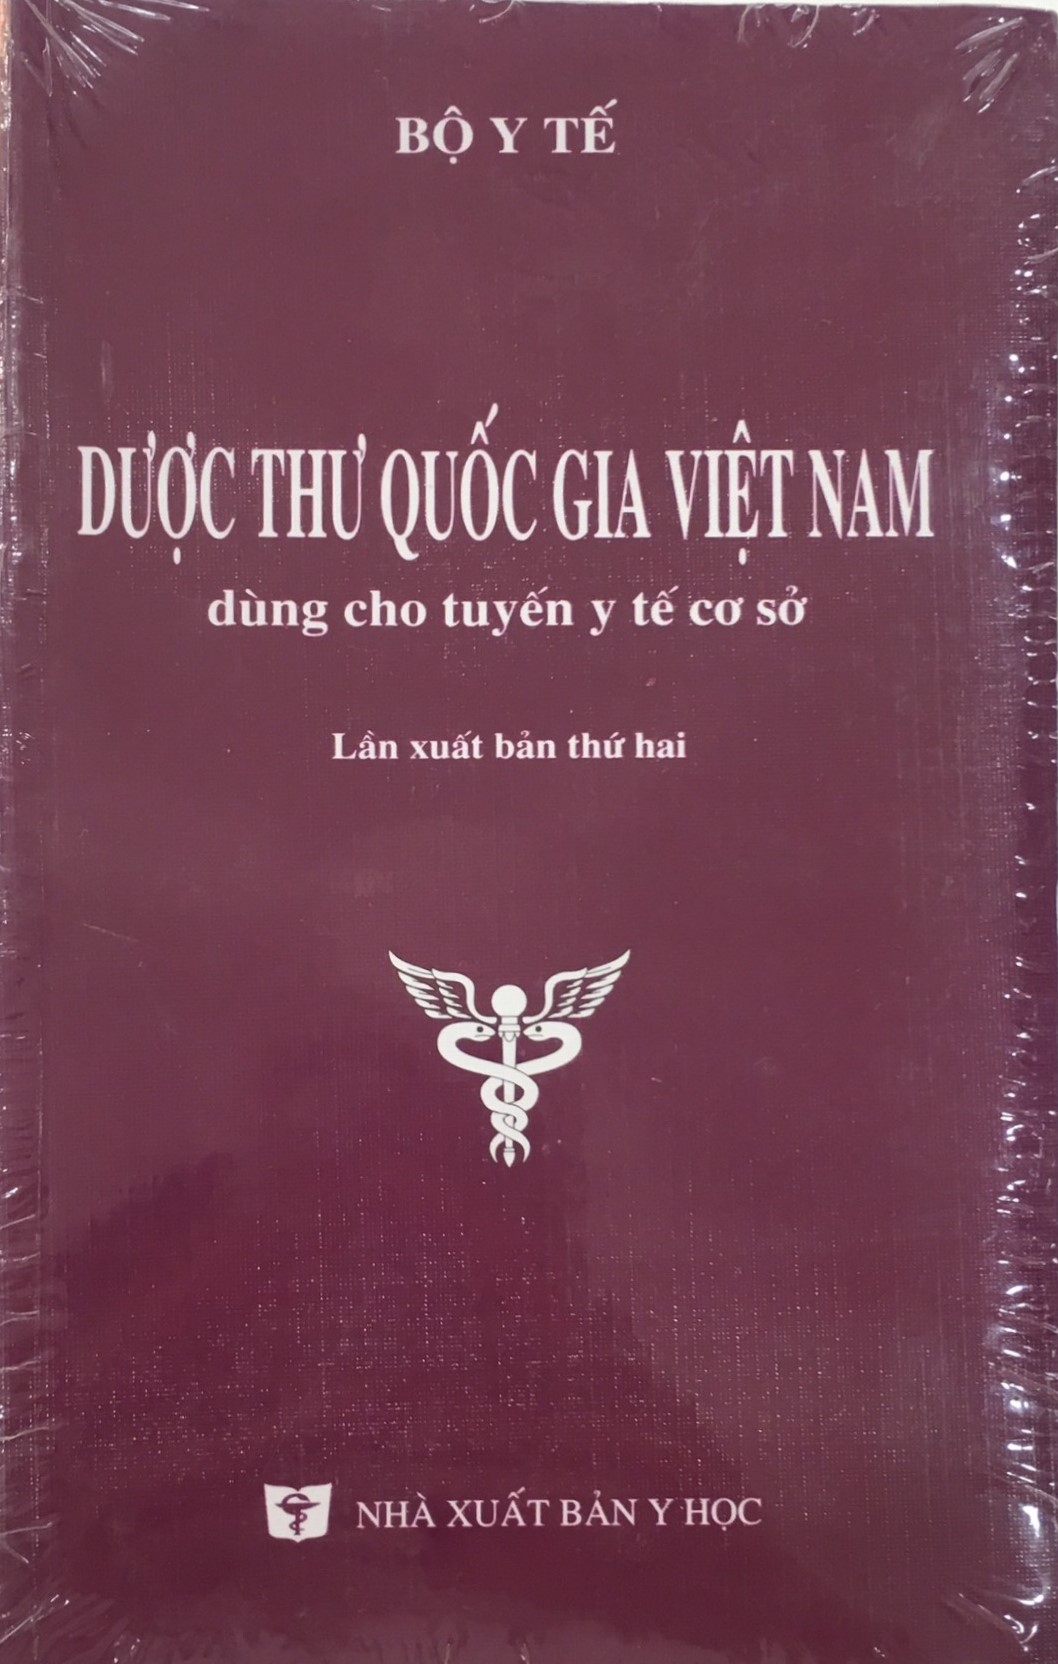 BENITO - Dược thư quốc gia Việt Nam (tuyến cơ sở)